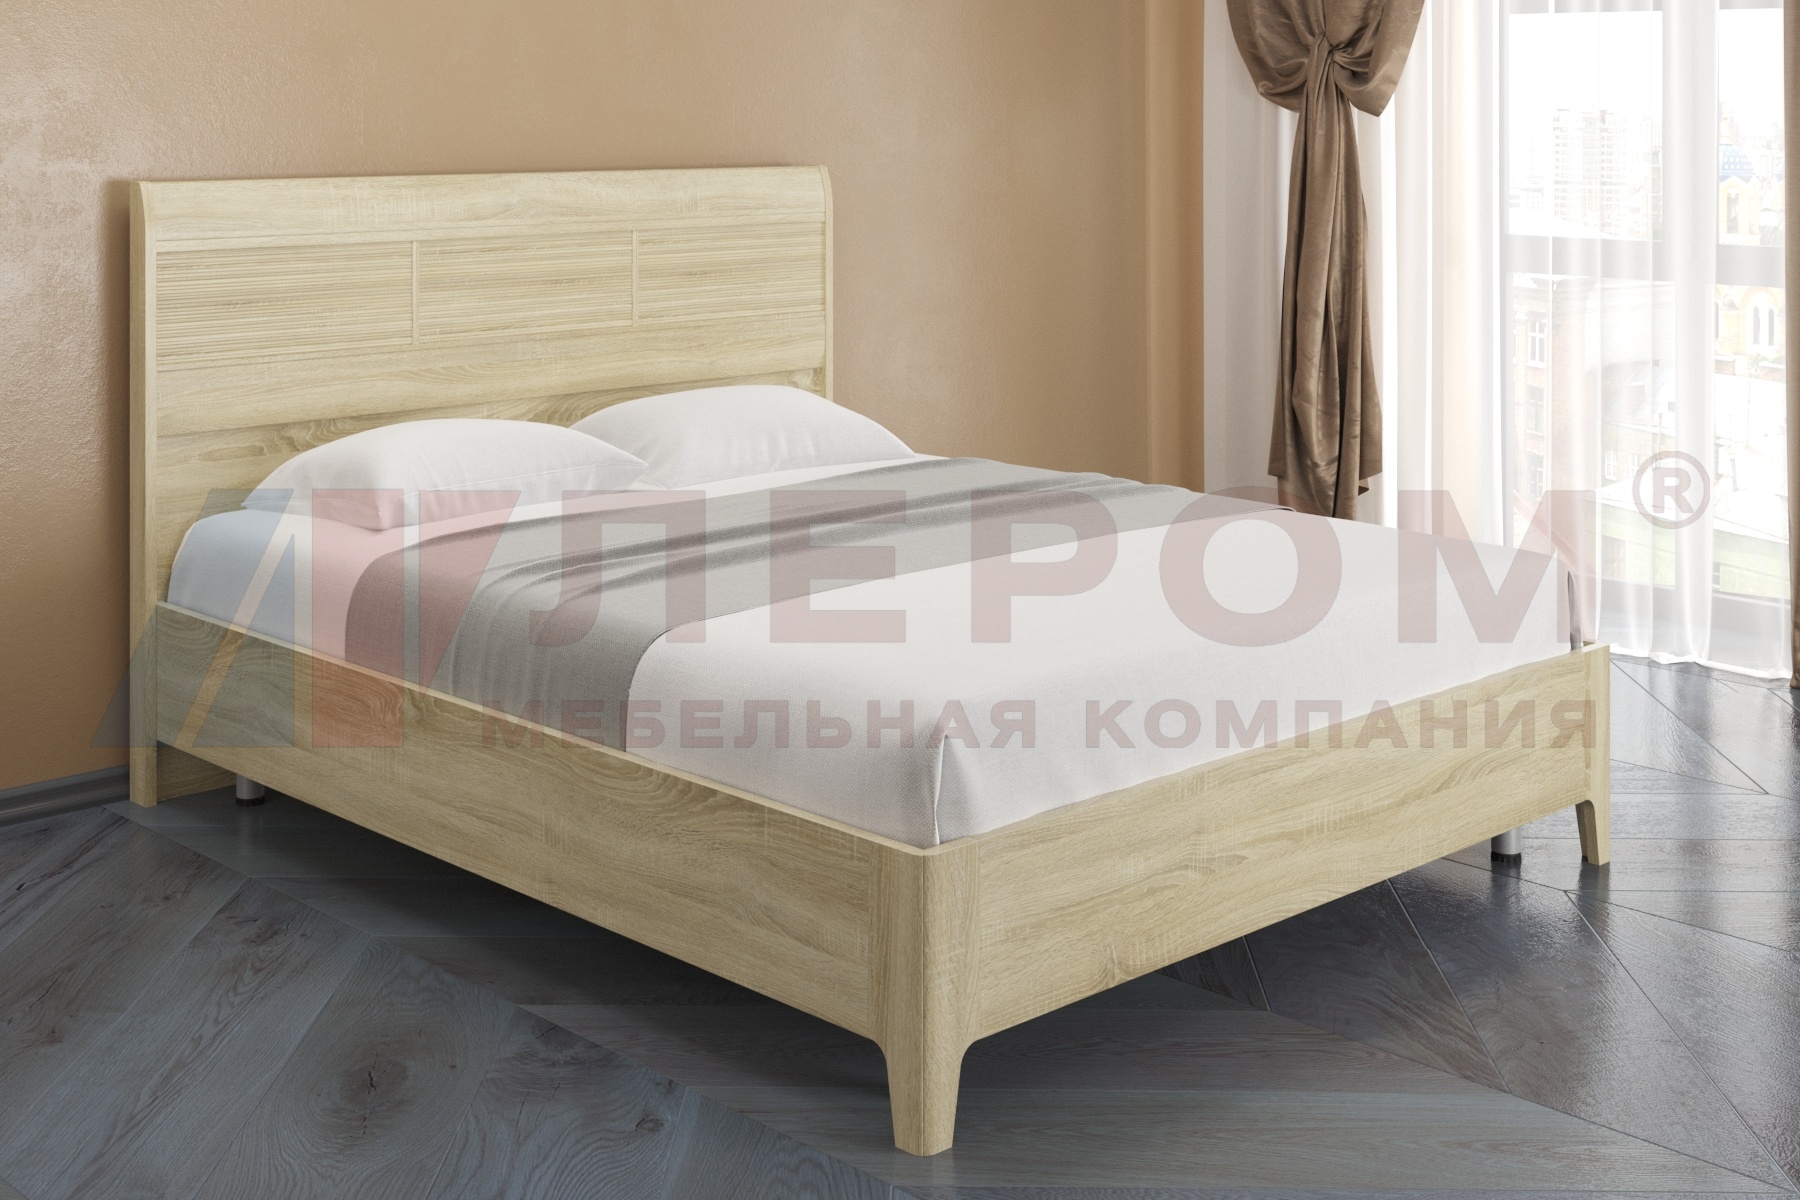 КР-2864 кровать (1,8*2,0)